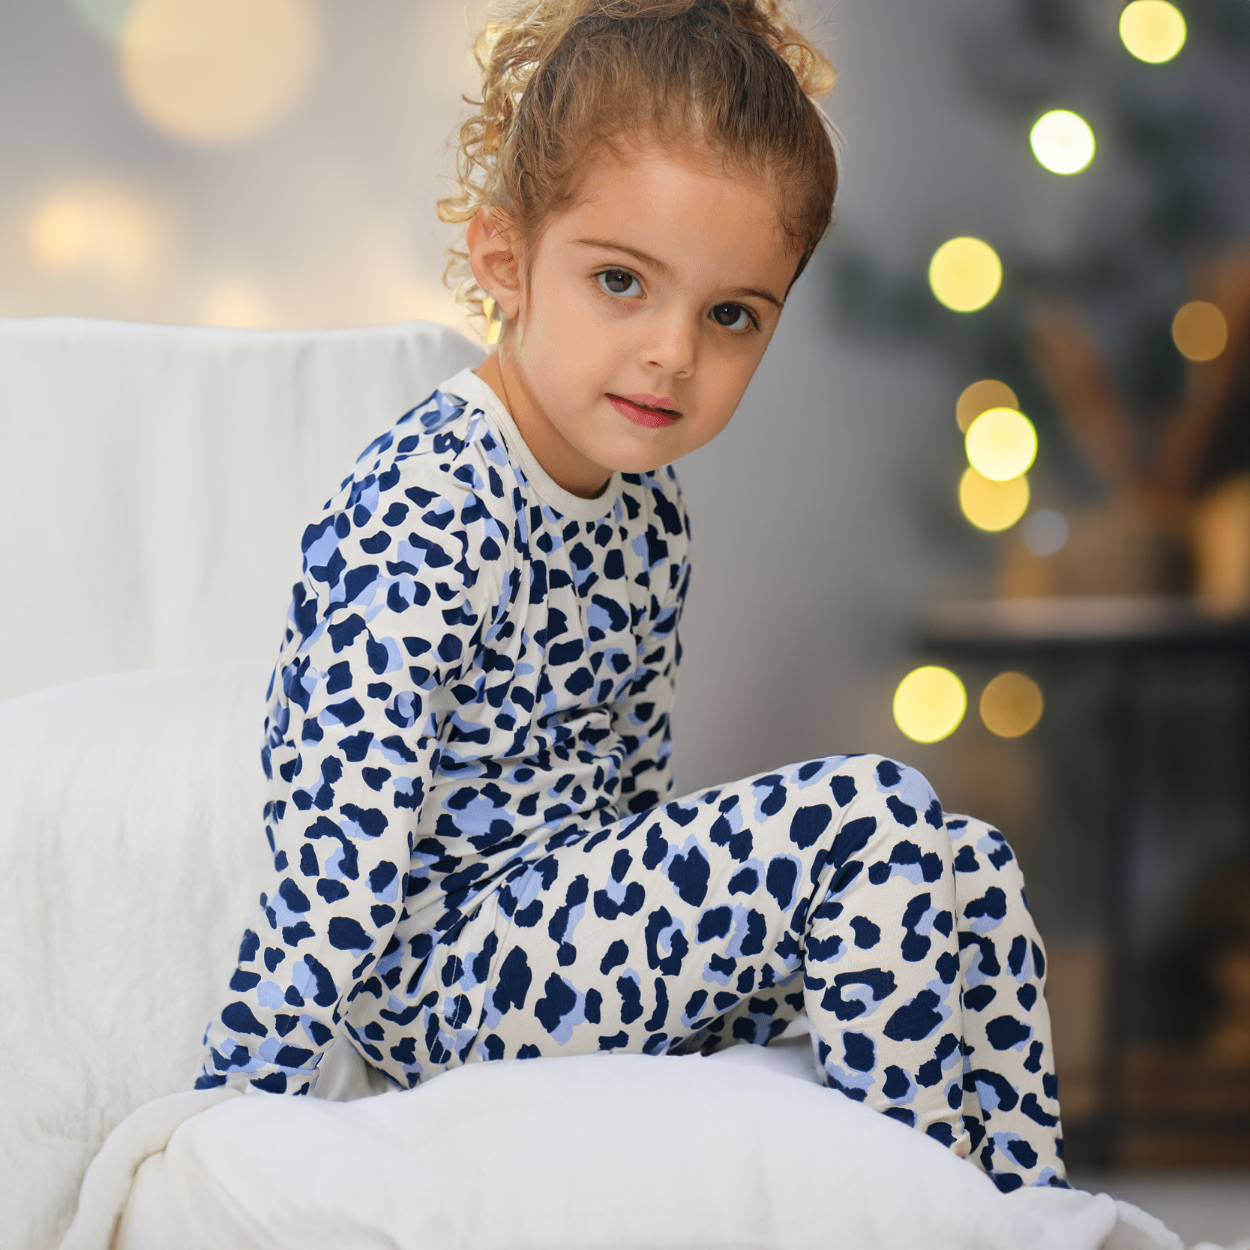 Set pigiama per bambini - Leopardo delle nevi